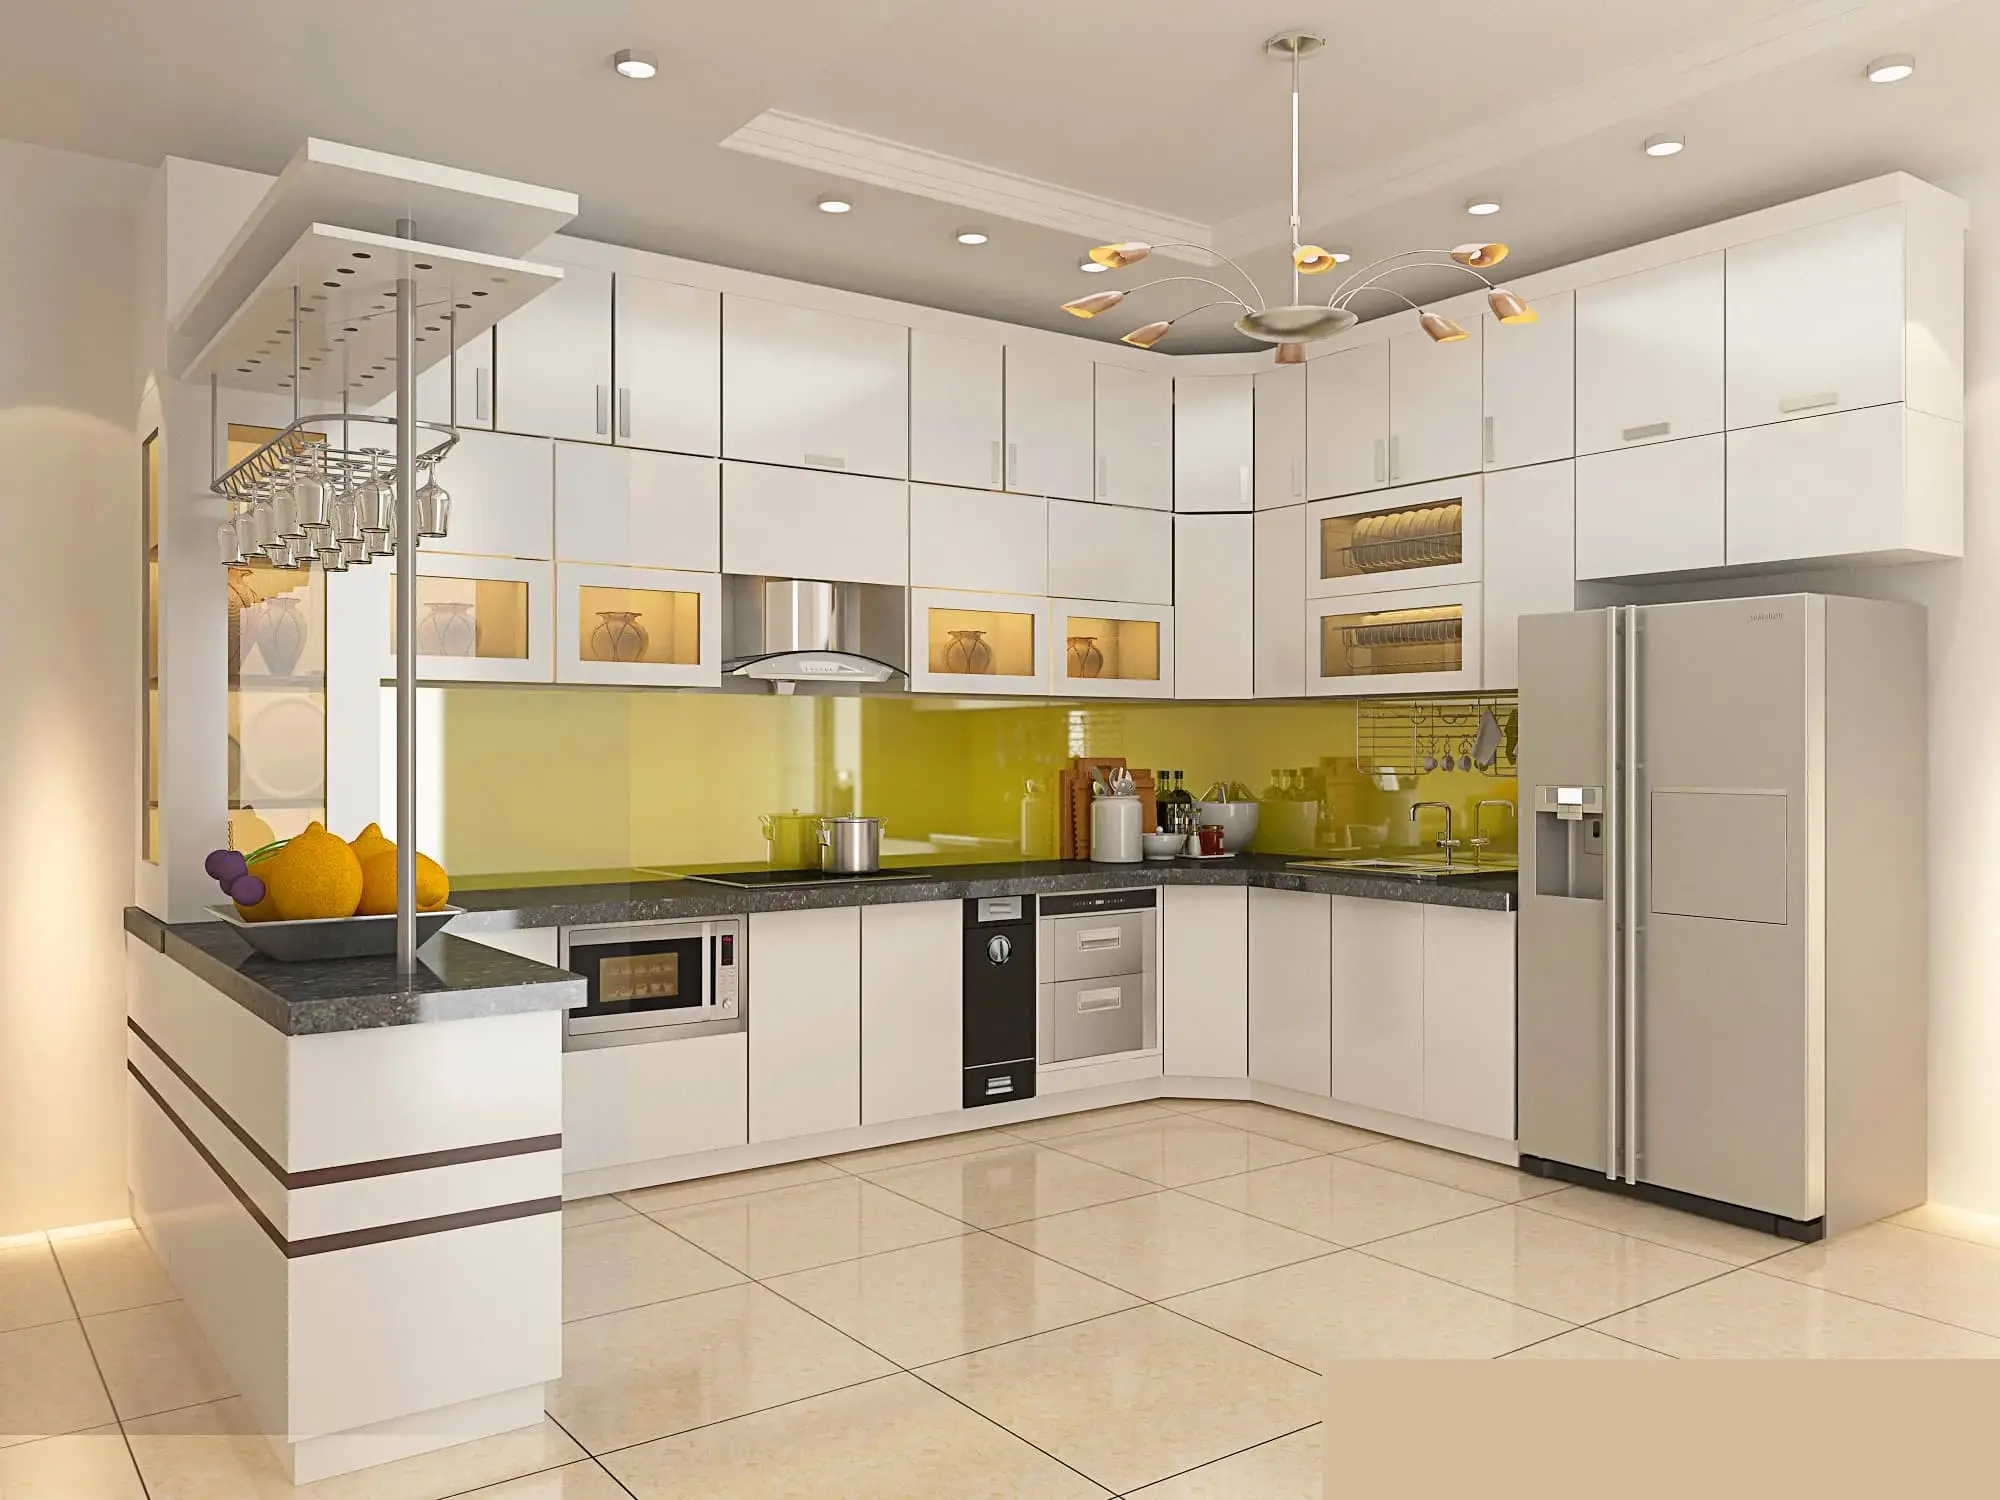 Thiết kế nội thất tại Vĩnh Phúc cho căn bếp hiện đại